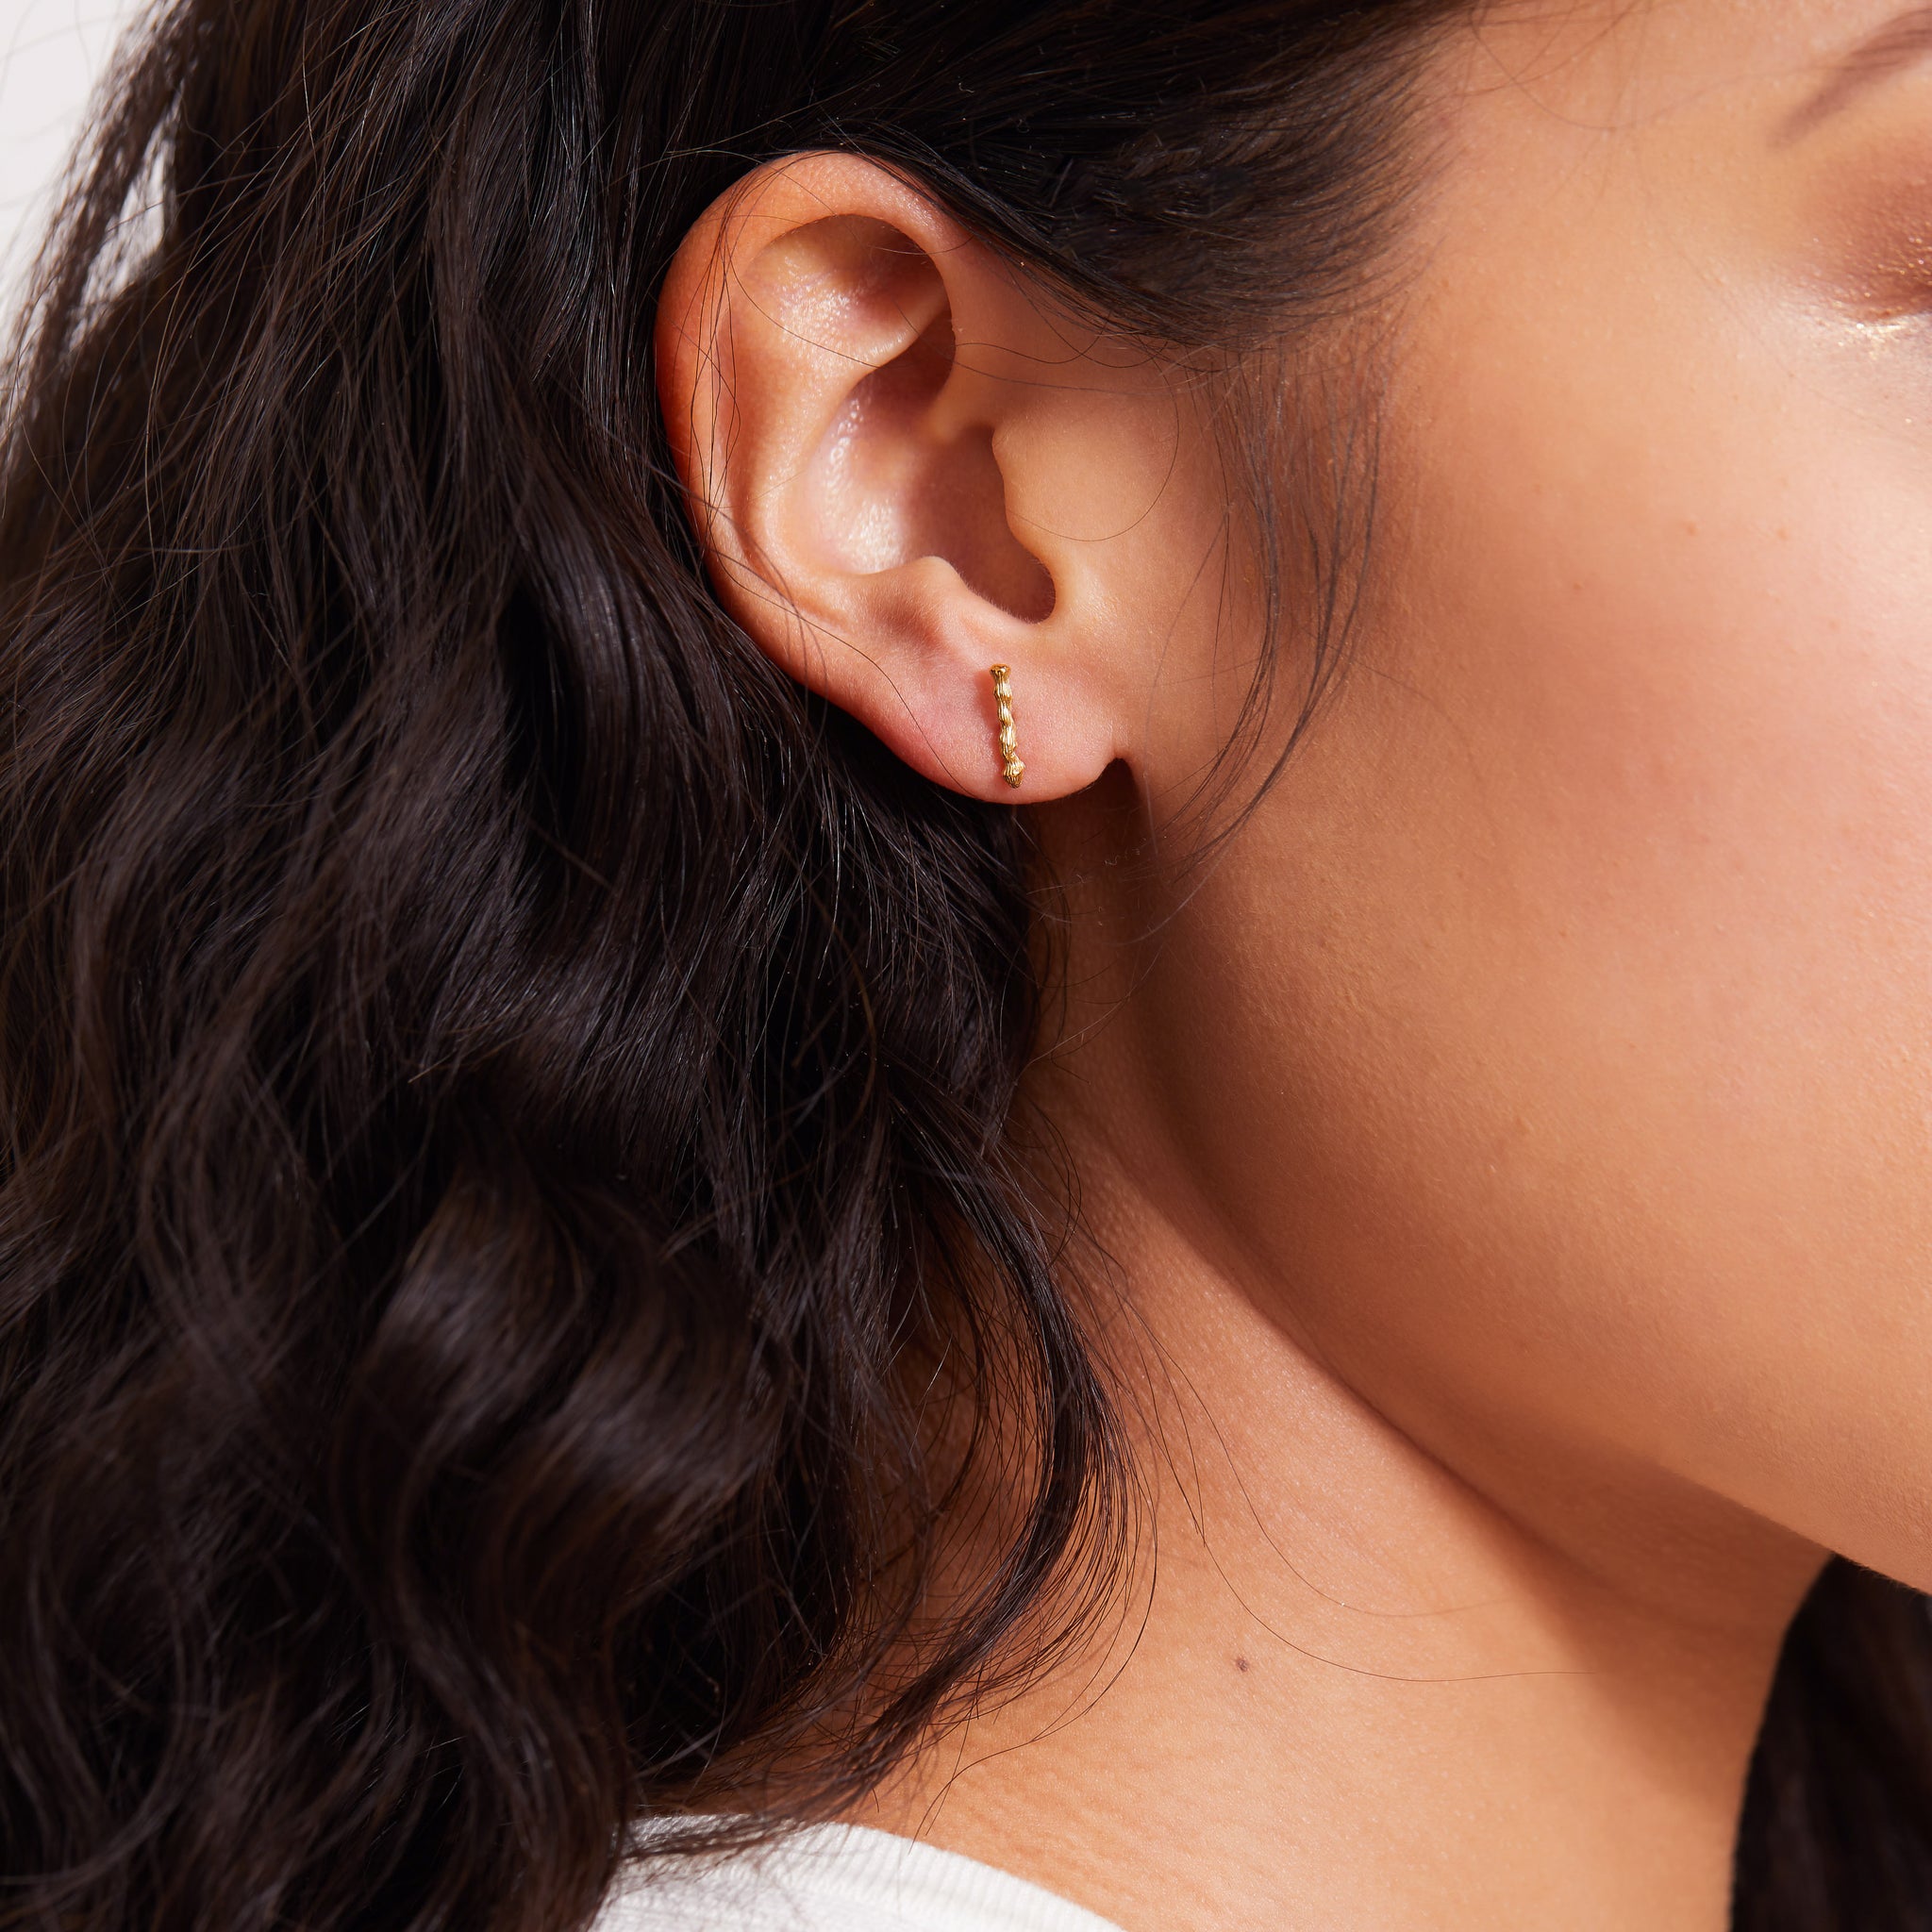 Stem Stud Earrings - Delicate Gold Stud Earrings - Lausanne Jewelry 